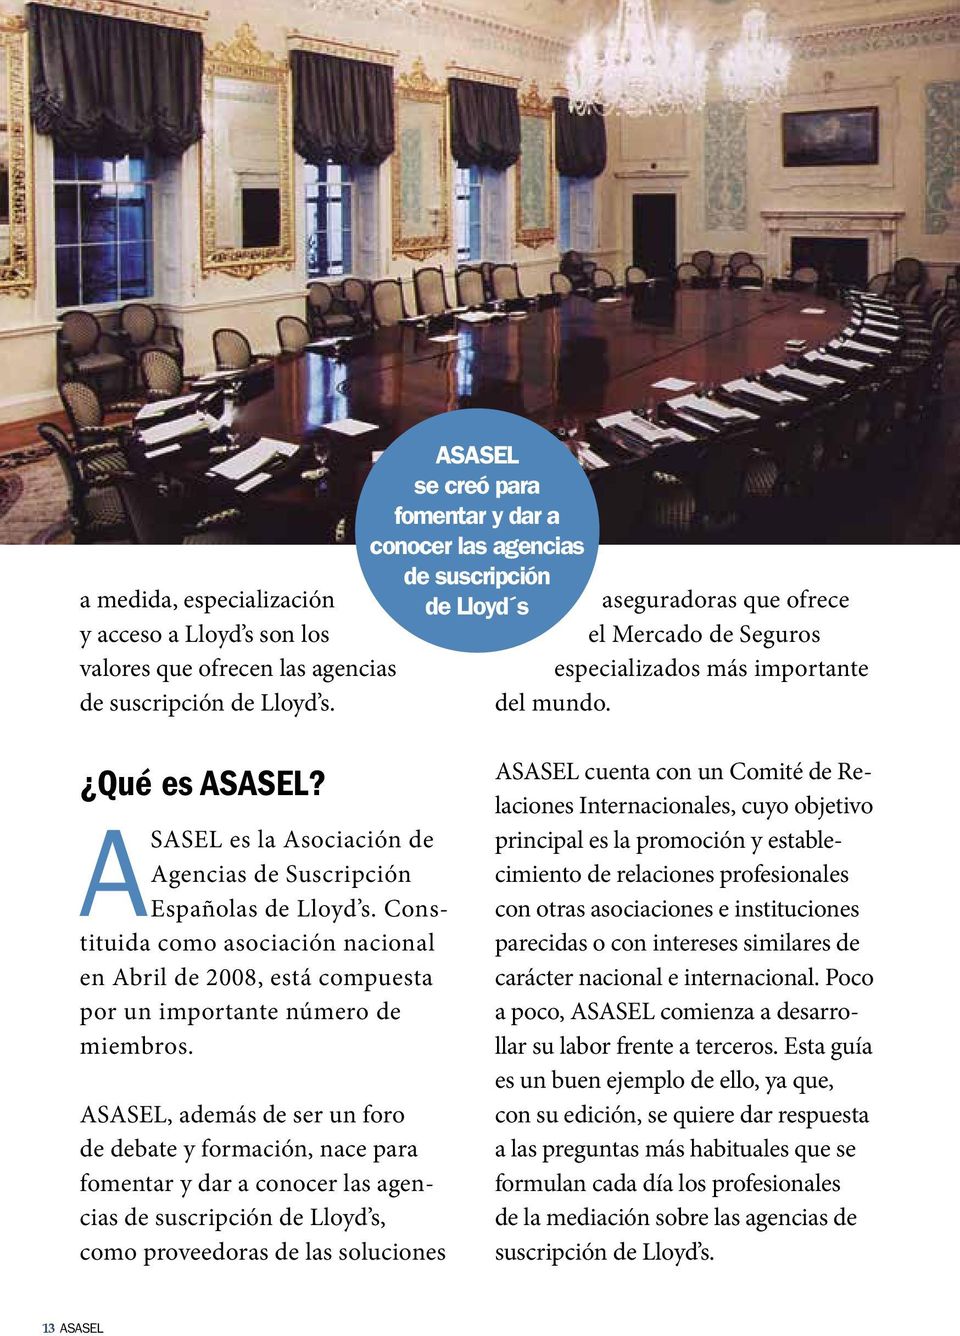 ASASEL es la Asociación de Agencias de Suscripción Españolas de Lloyd s. Constituida como asociación nacional en Abril de 2008, está compuesta por un importante número de miembros.